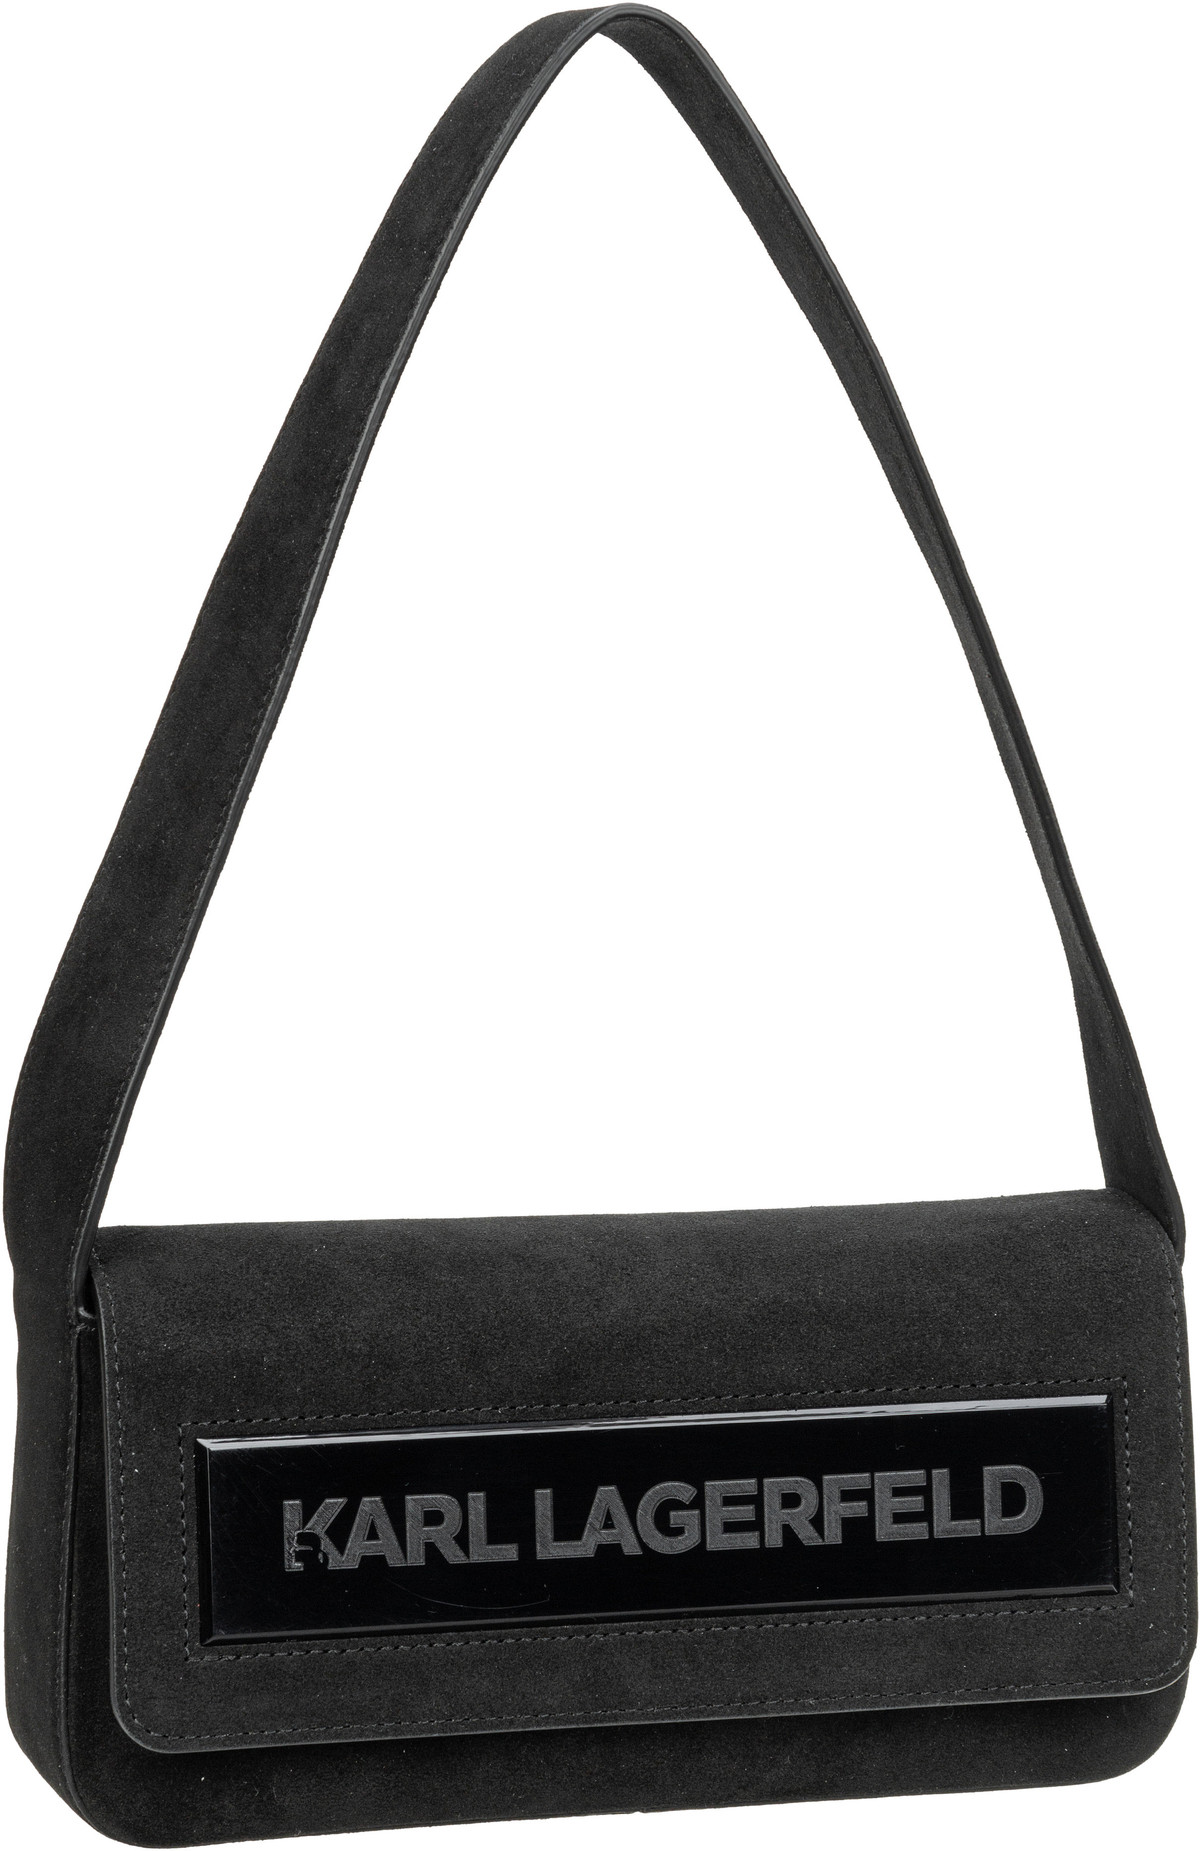 Karl Lagerfeld K/Essential K MD Flap SHB Suede  in Schwarz (1.5 Liter), Schultertasche